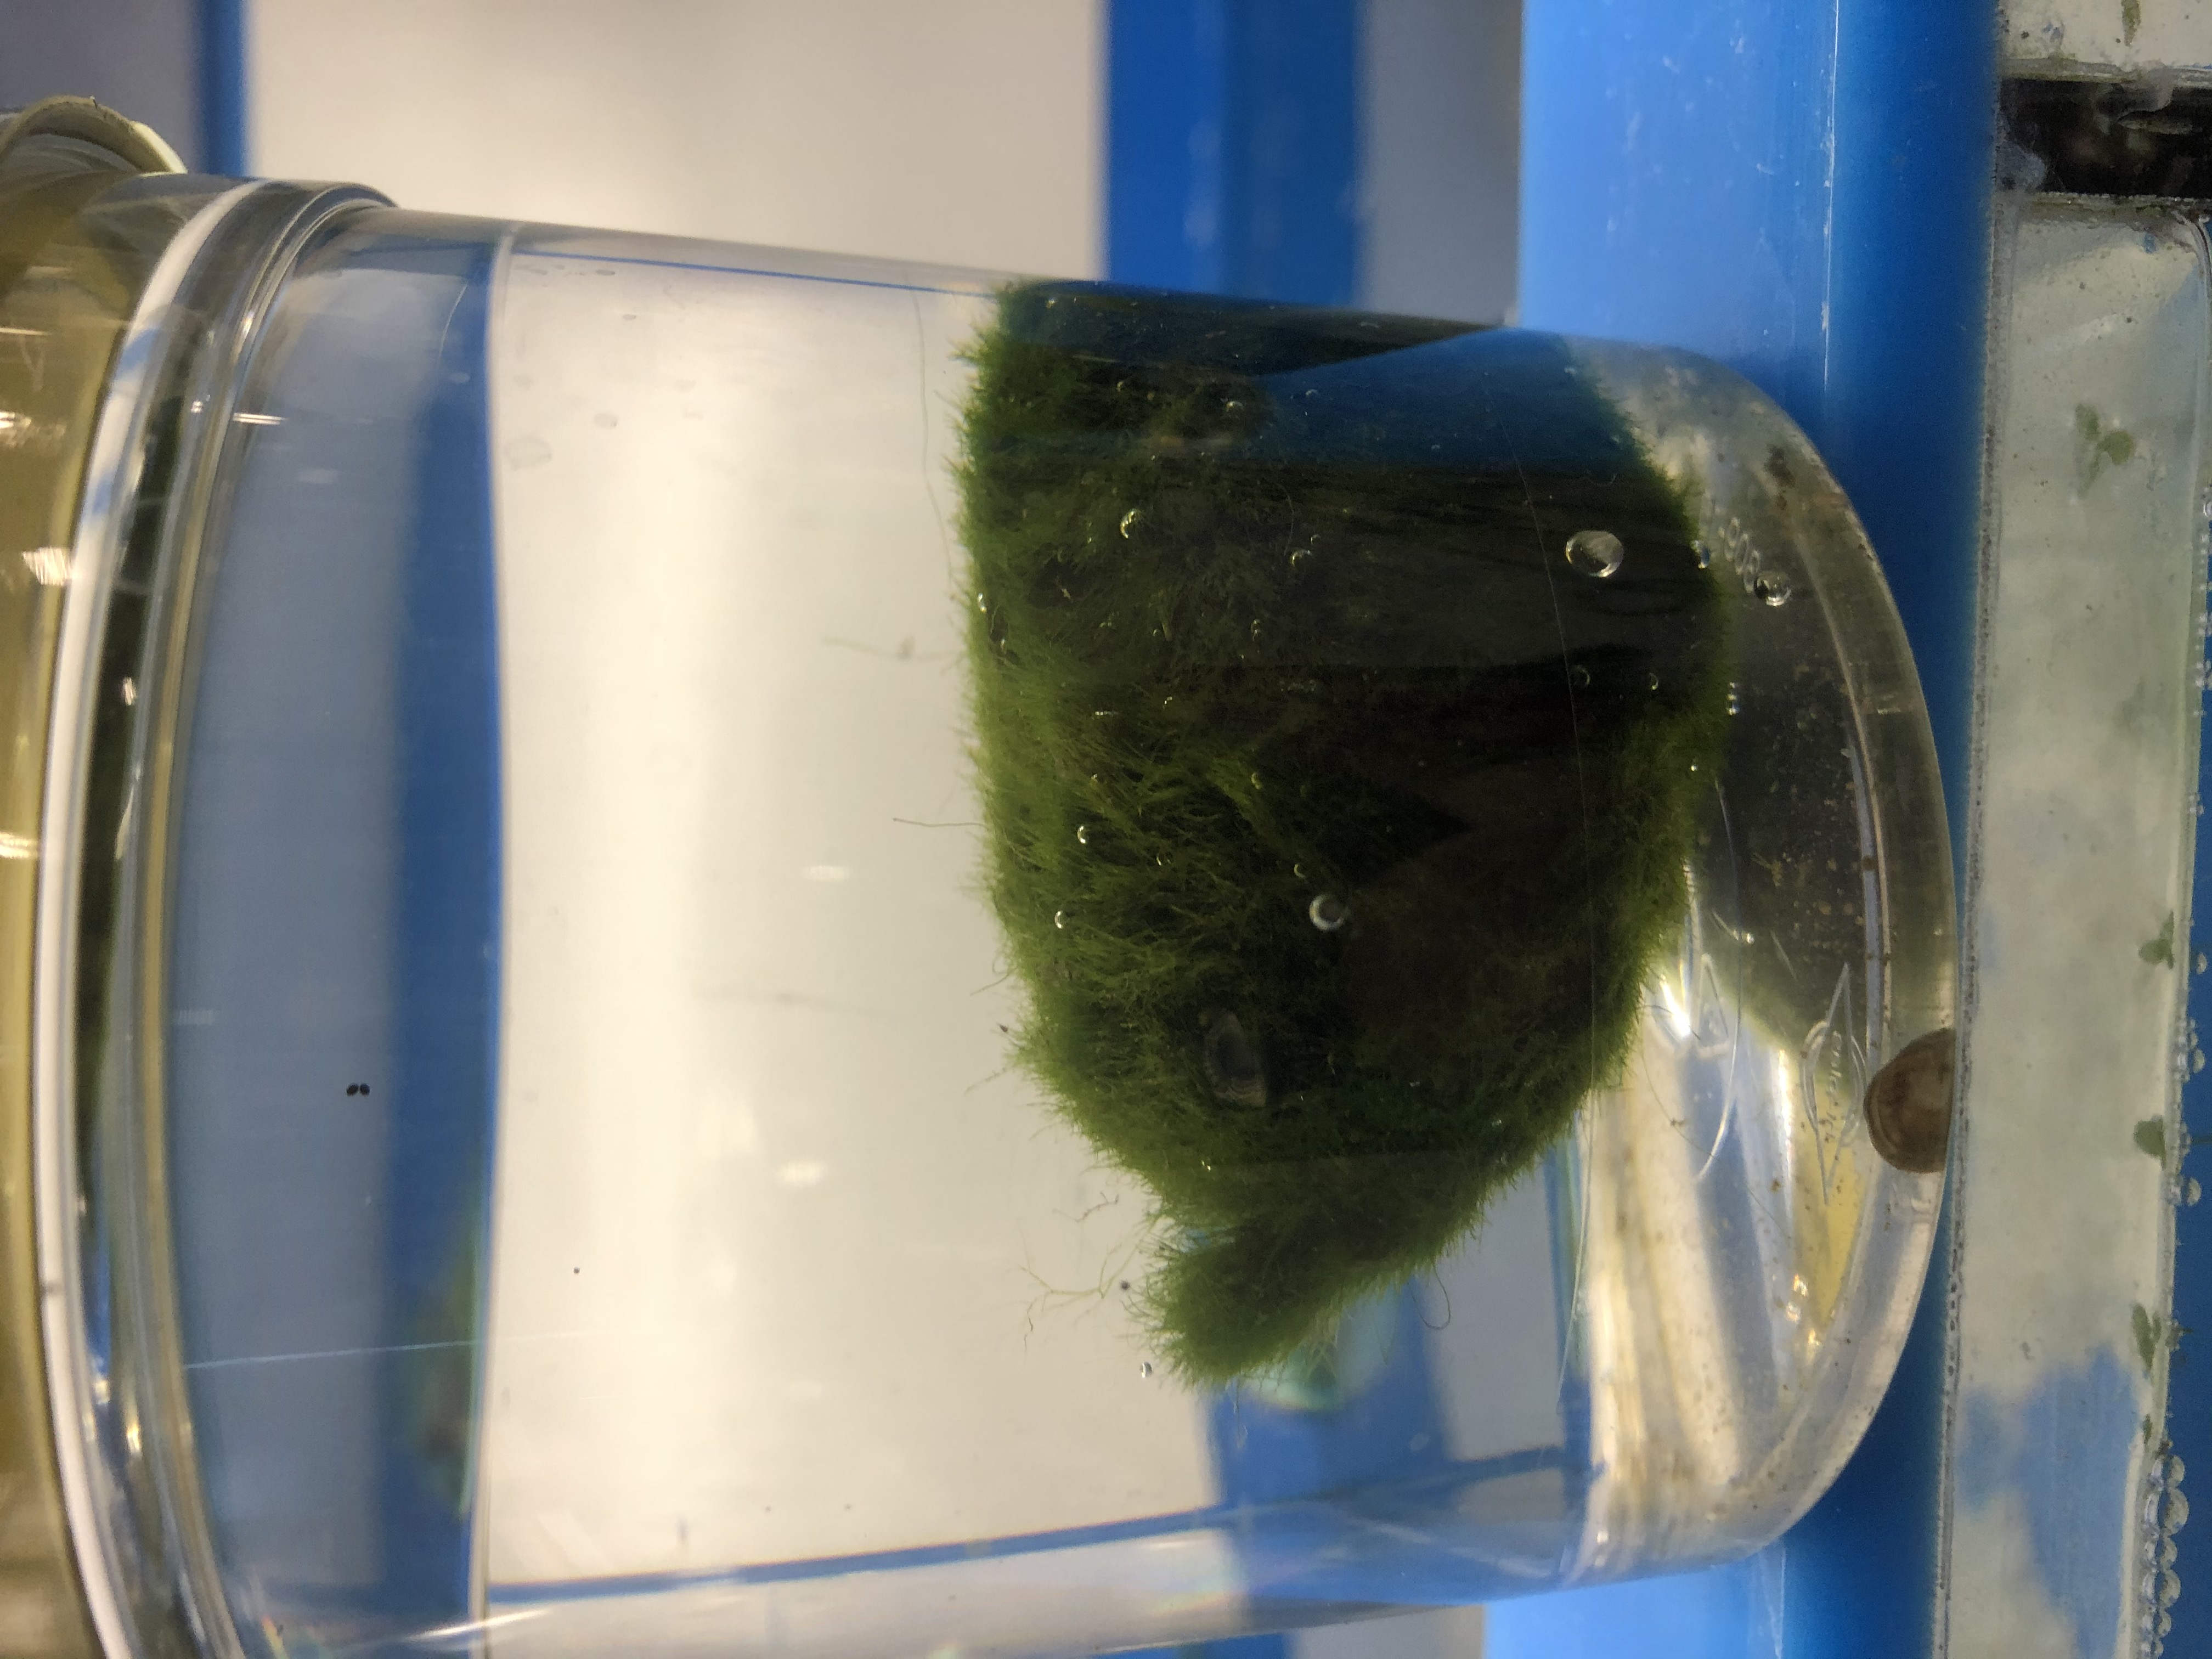 Invasive Zebra Mussels found in aquarium “moss ball” product in